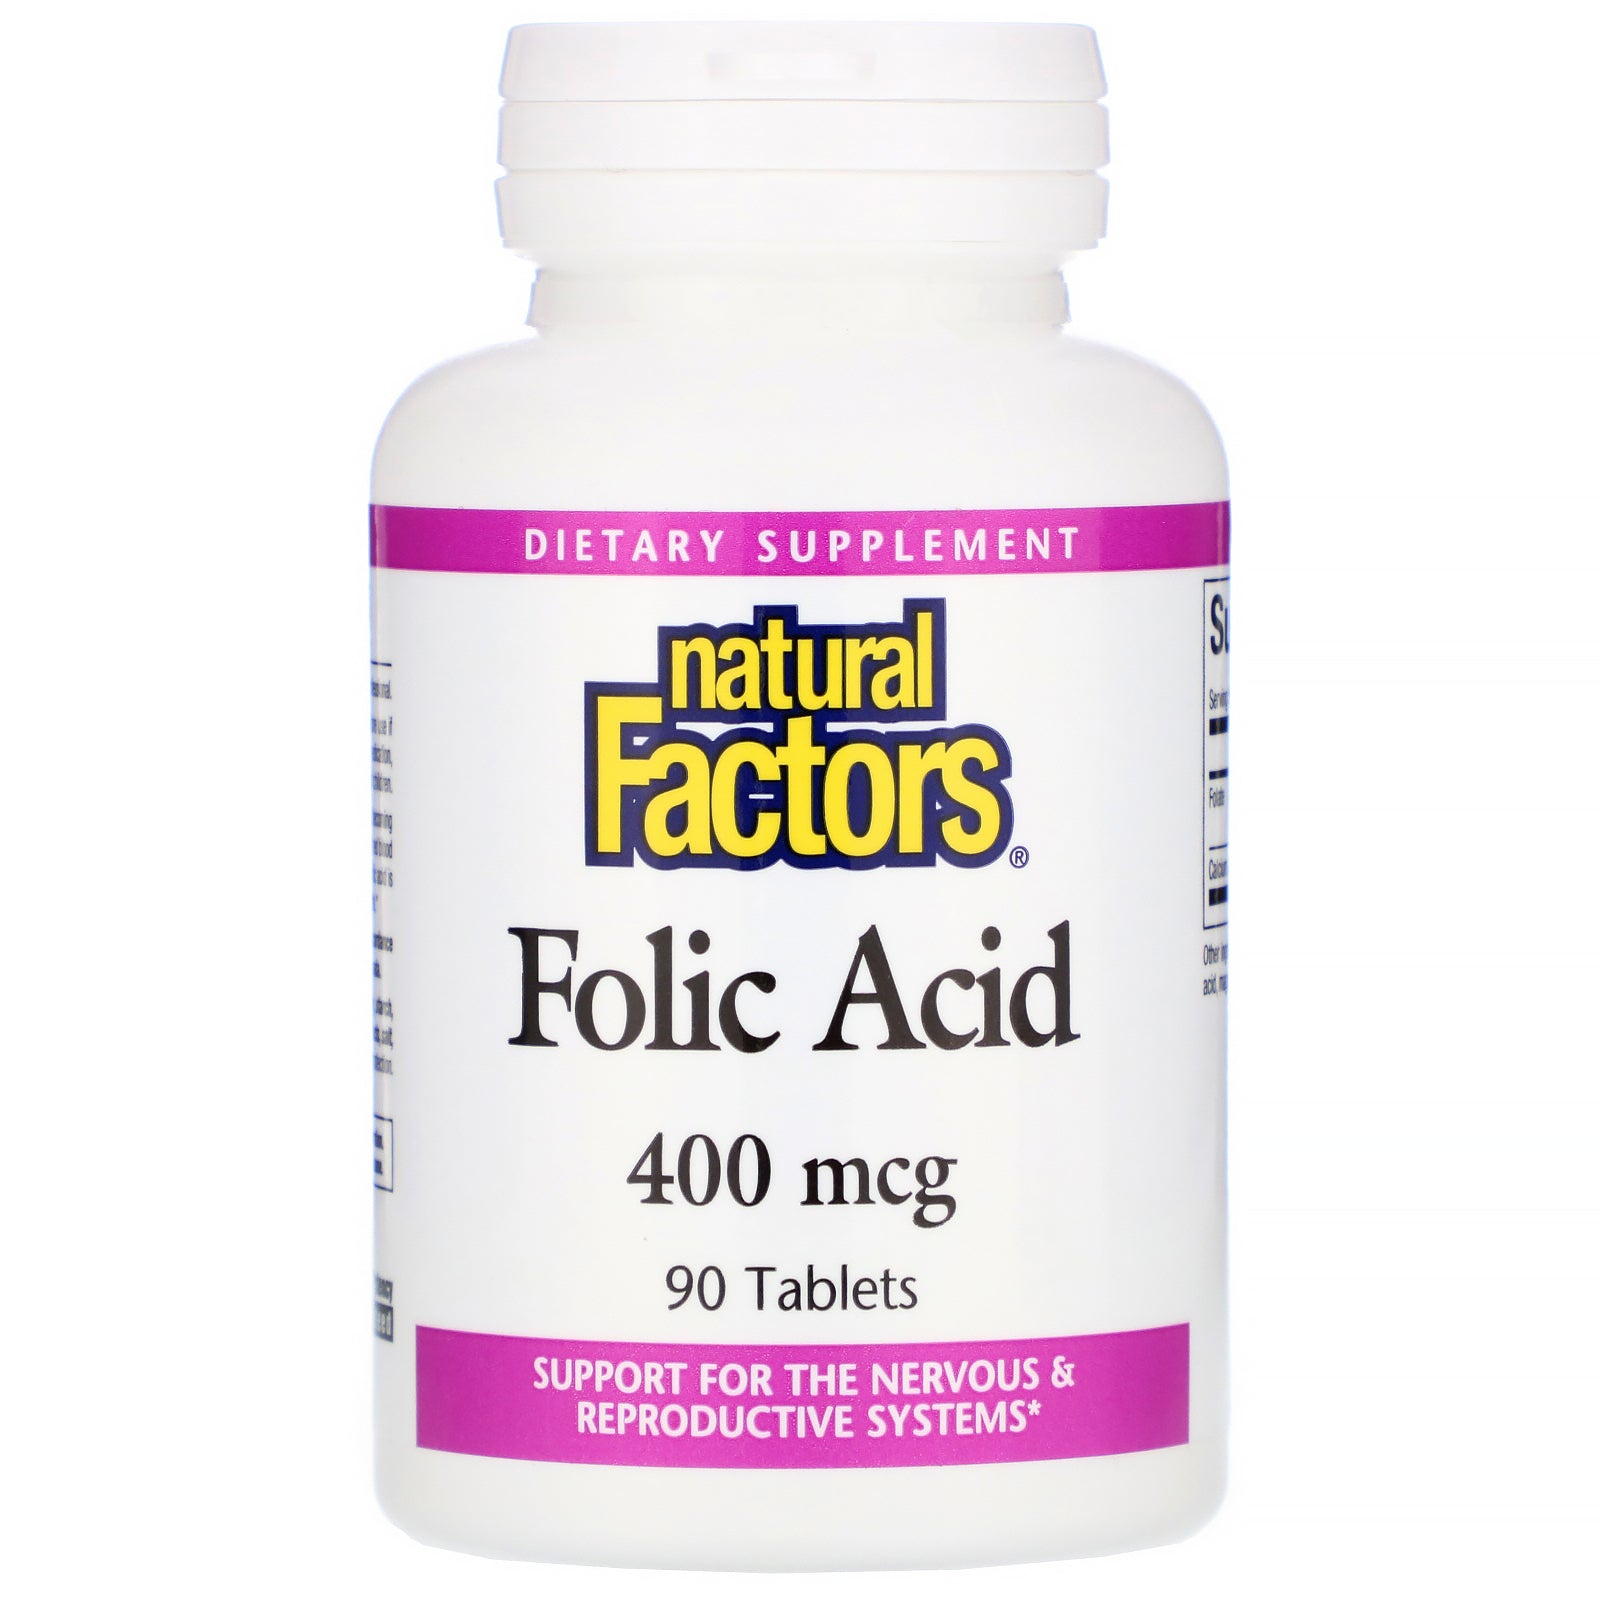 Natural Factors, Folic Acid, 400 mcg, 90 Tablets